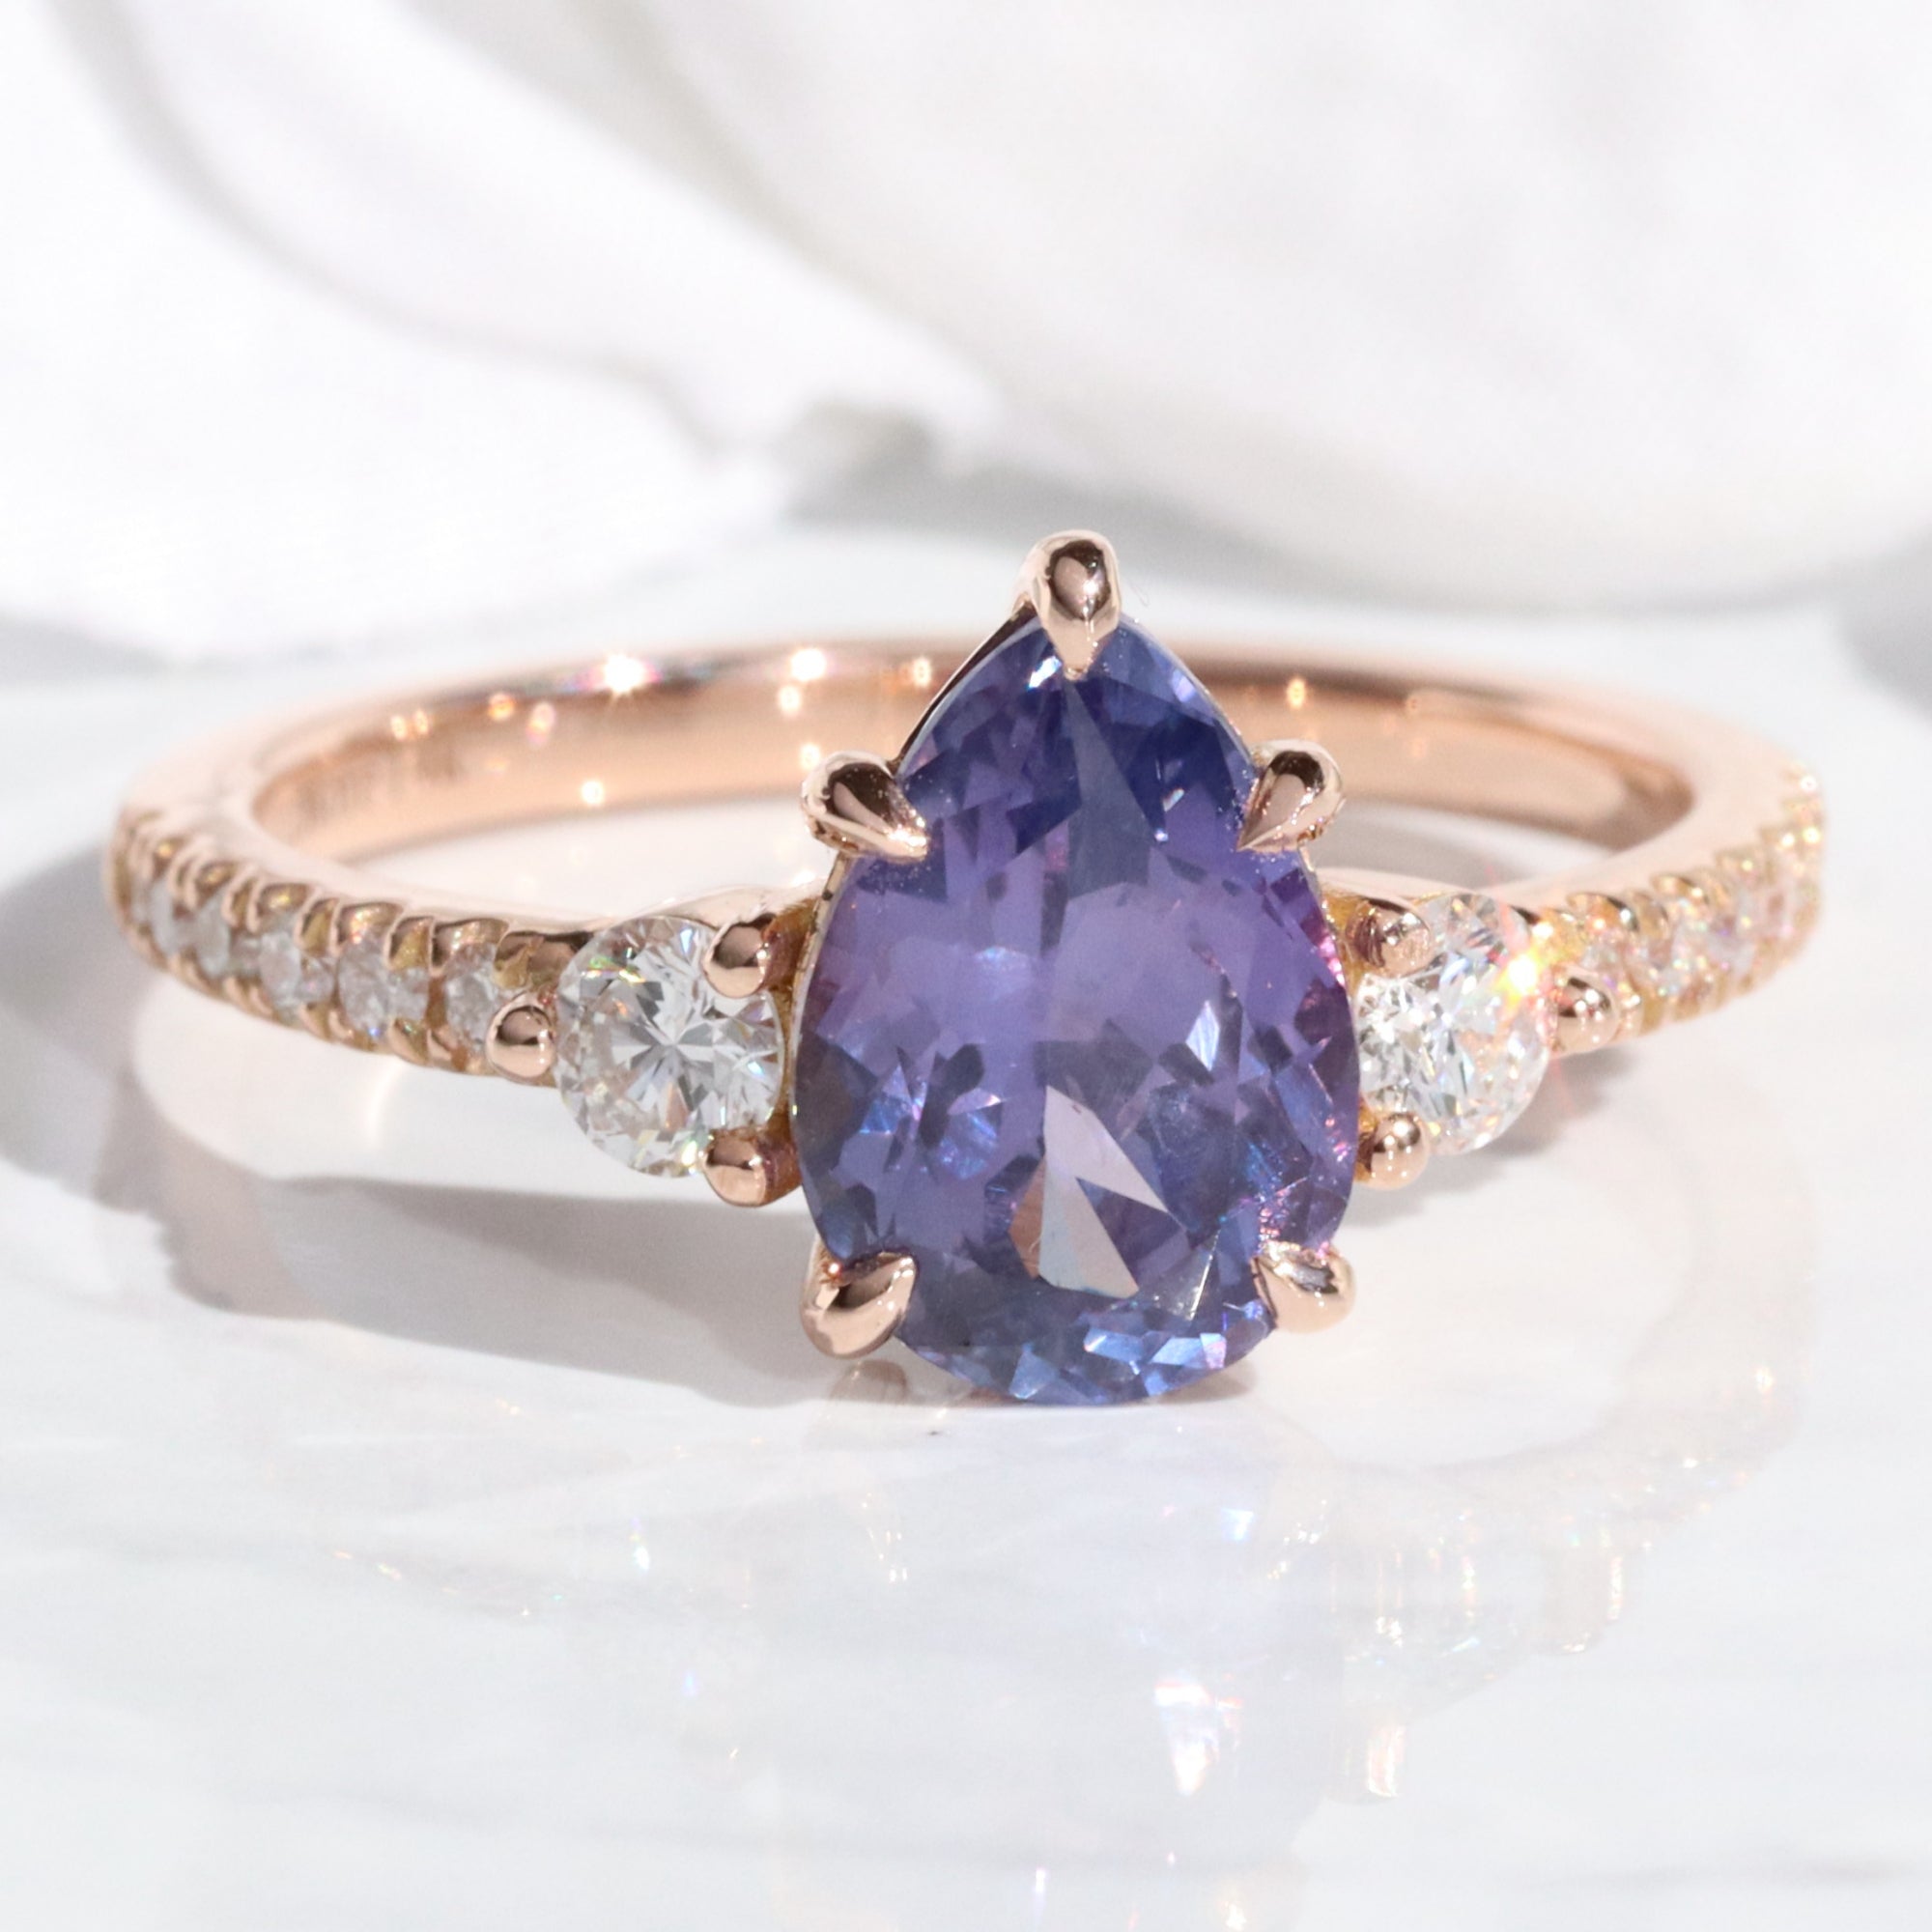 Pear purple sapphire ring rose gold 3 stone diamond ring la more design jewelry